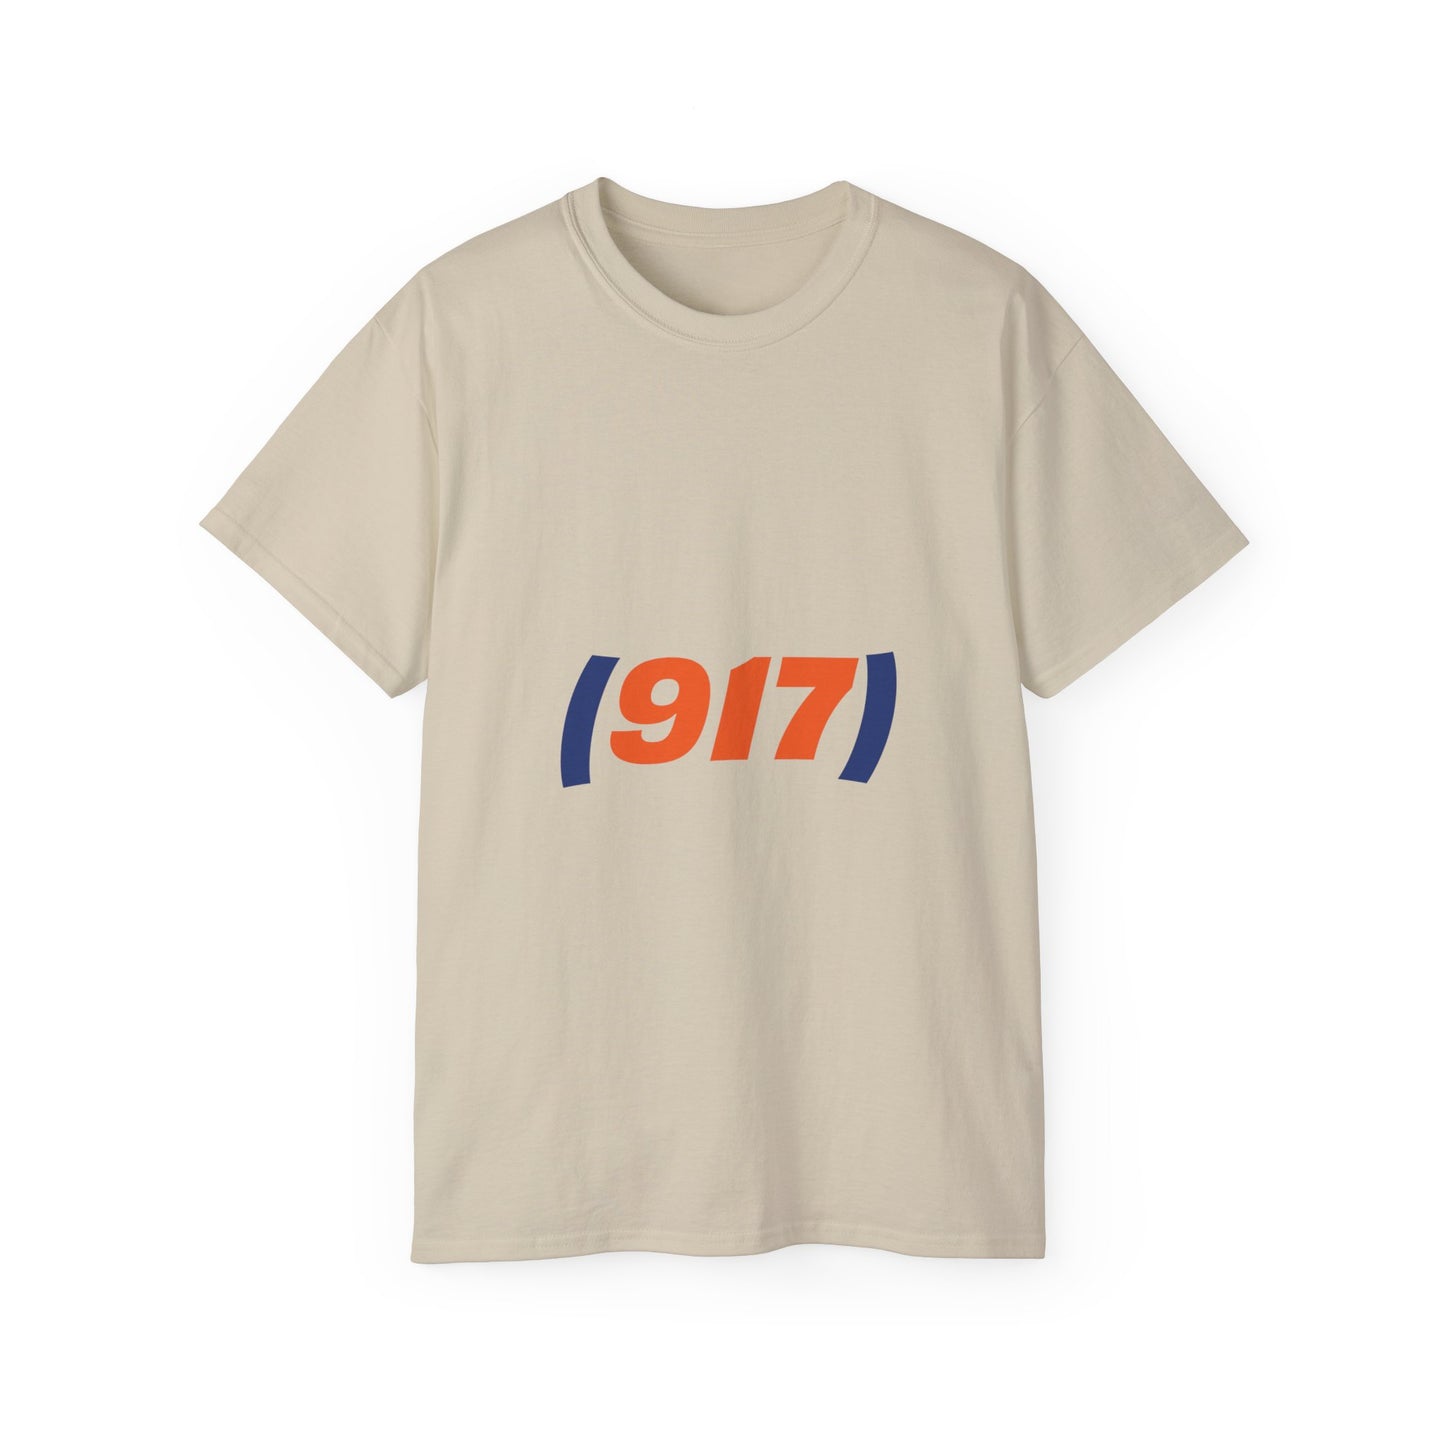 (917) T-Shirt